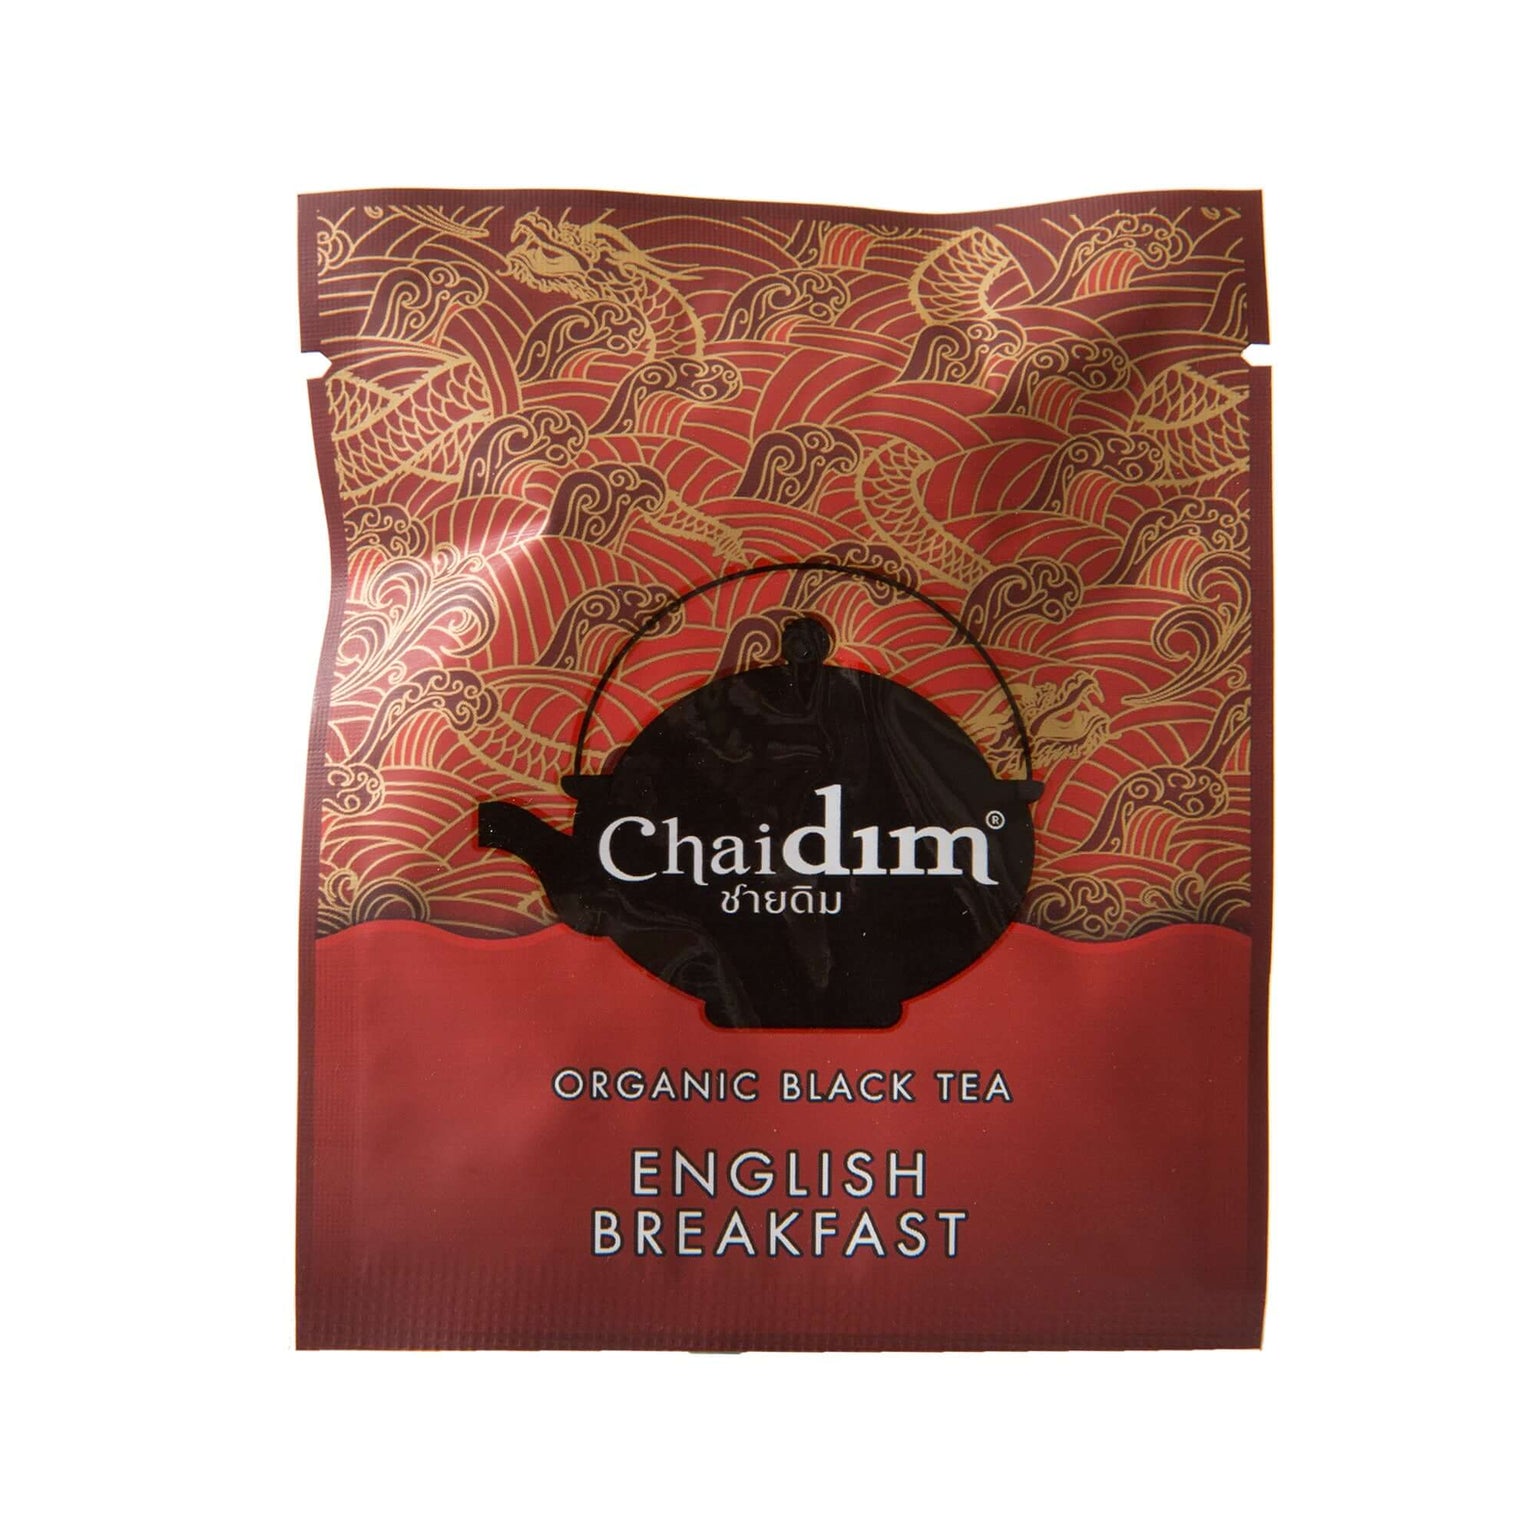 Chaidim Organic Tea Made in Thailand - Chaidim Teahouse Chinatown